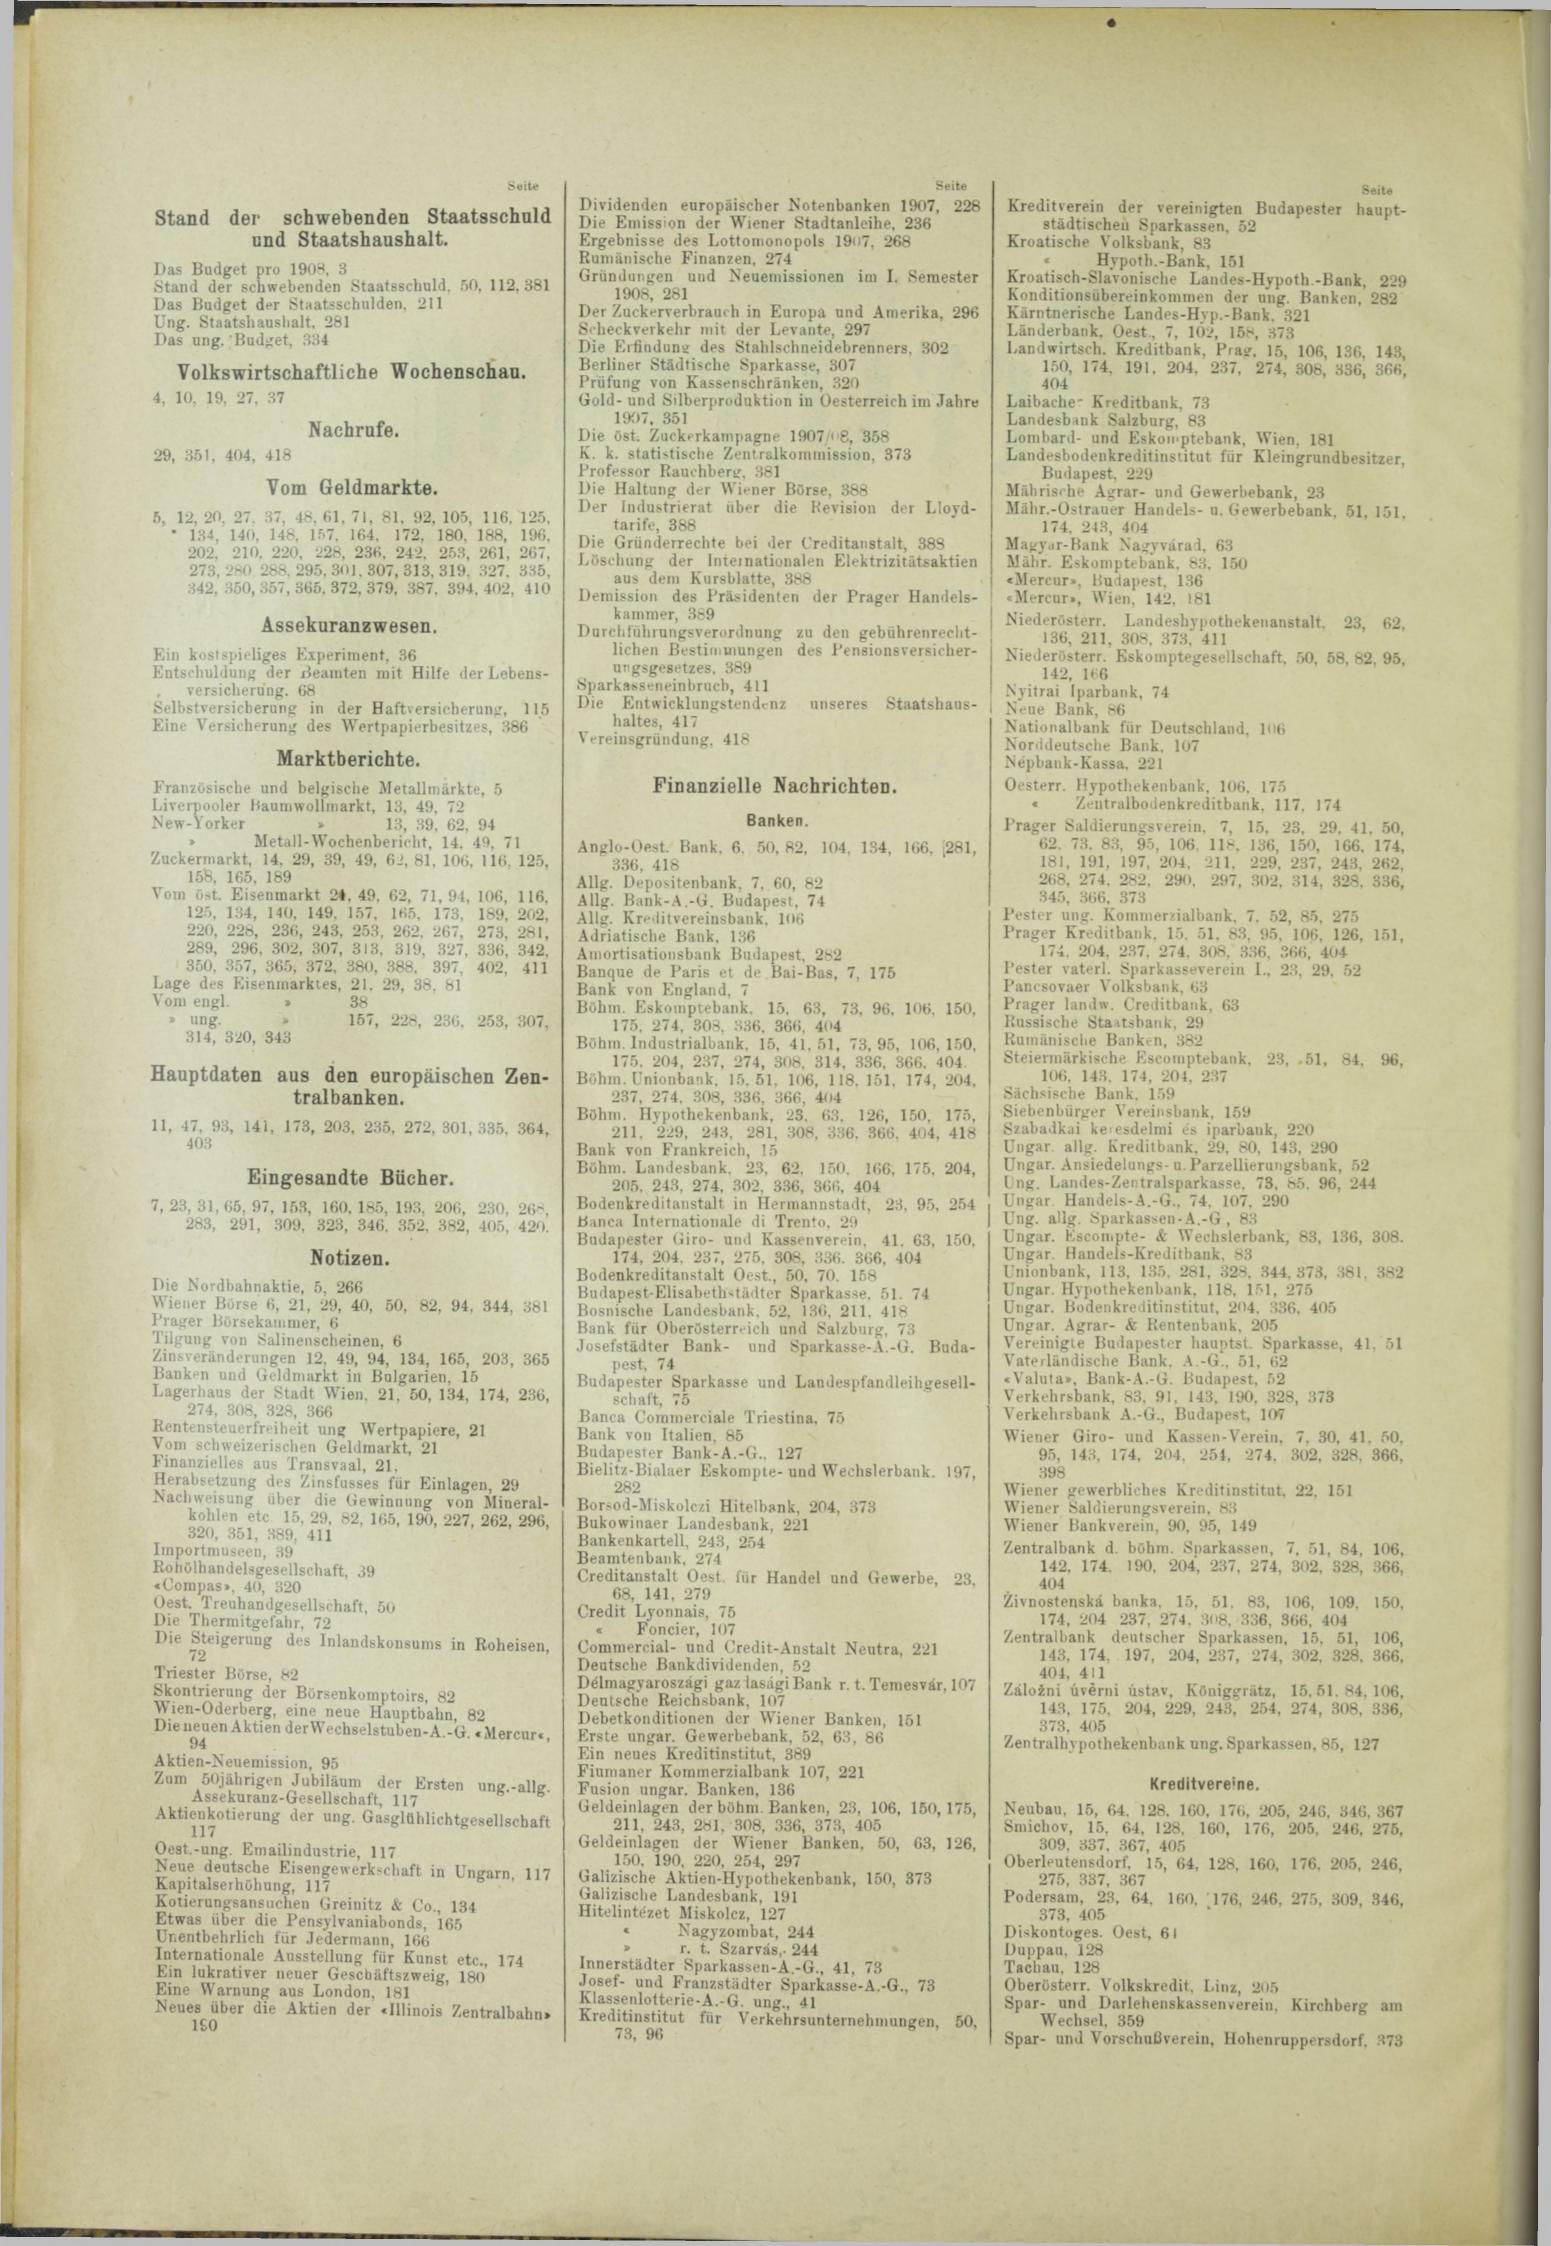 Der Tresor 12.09.1908 - Seite 8